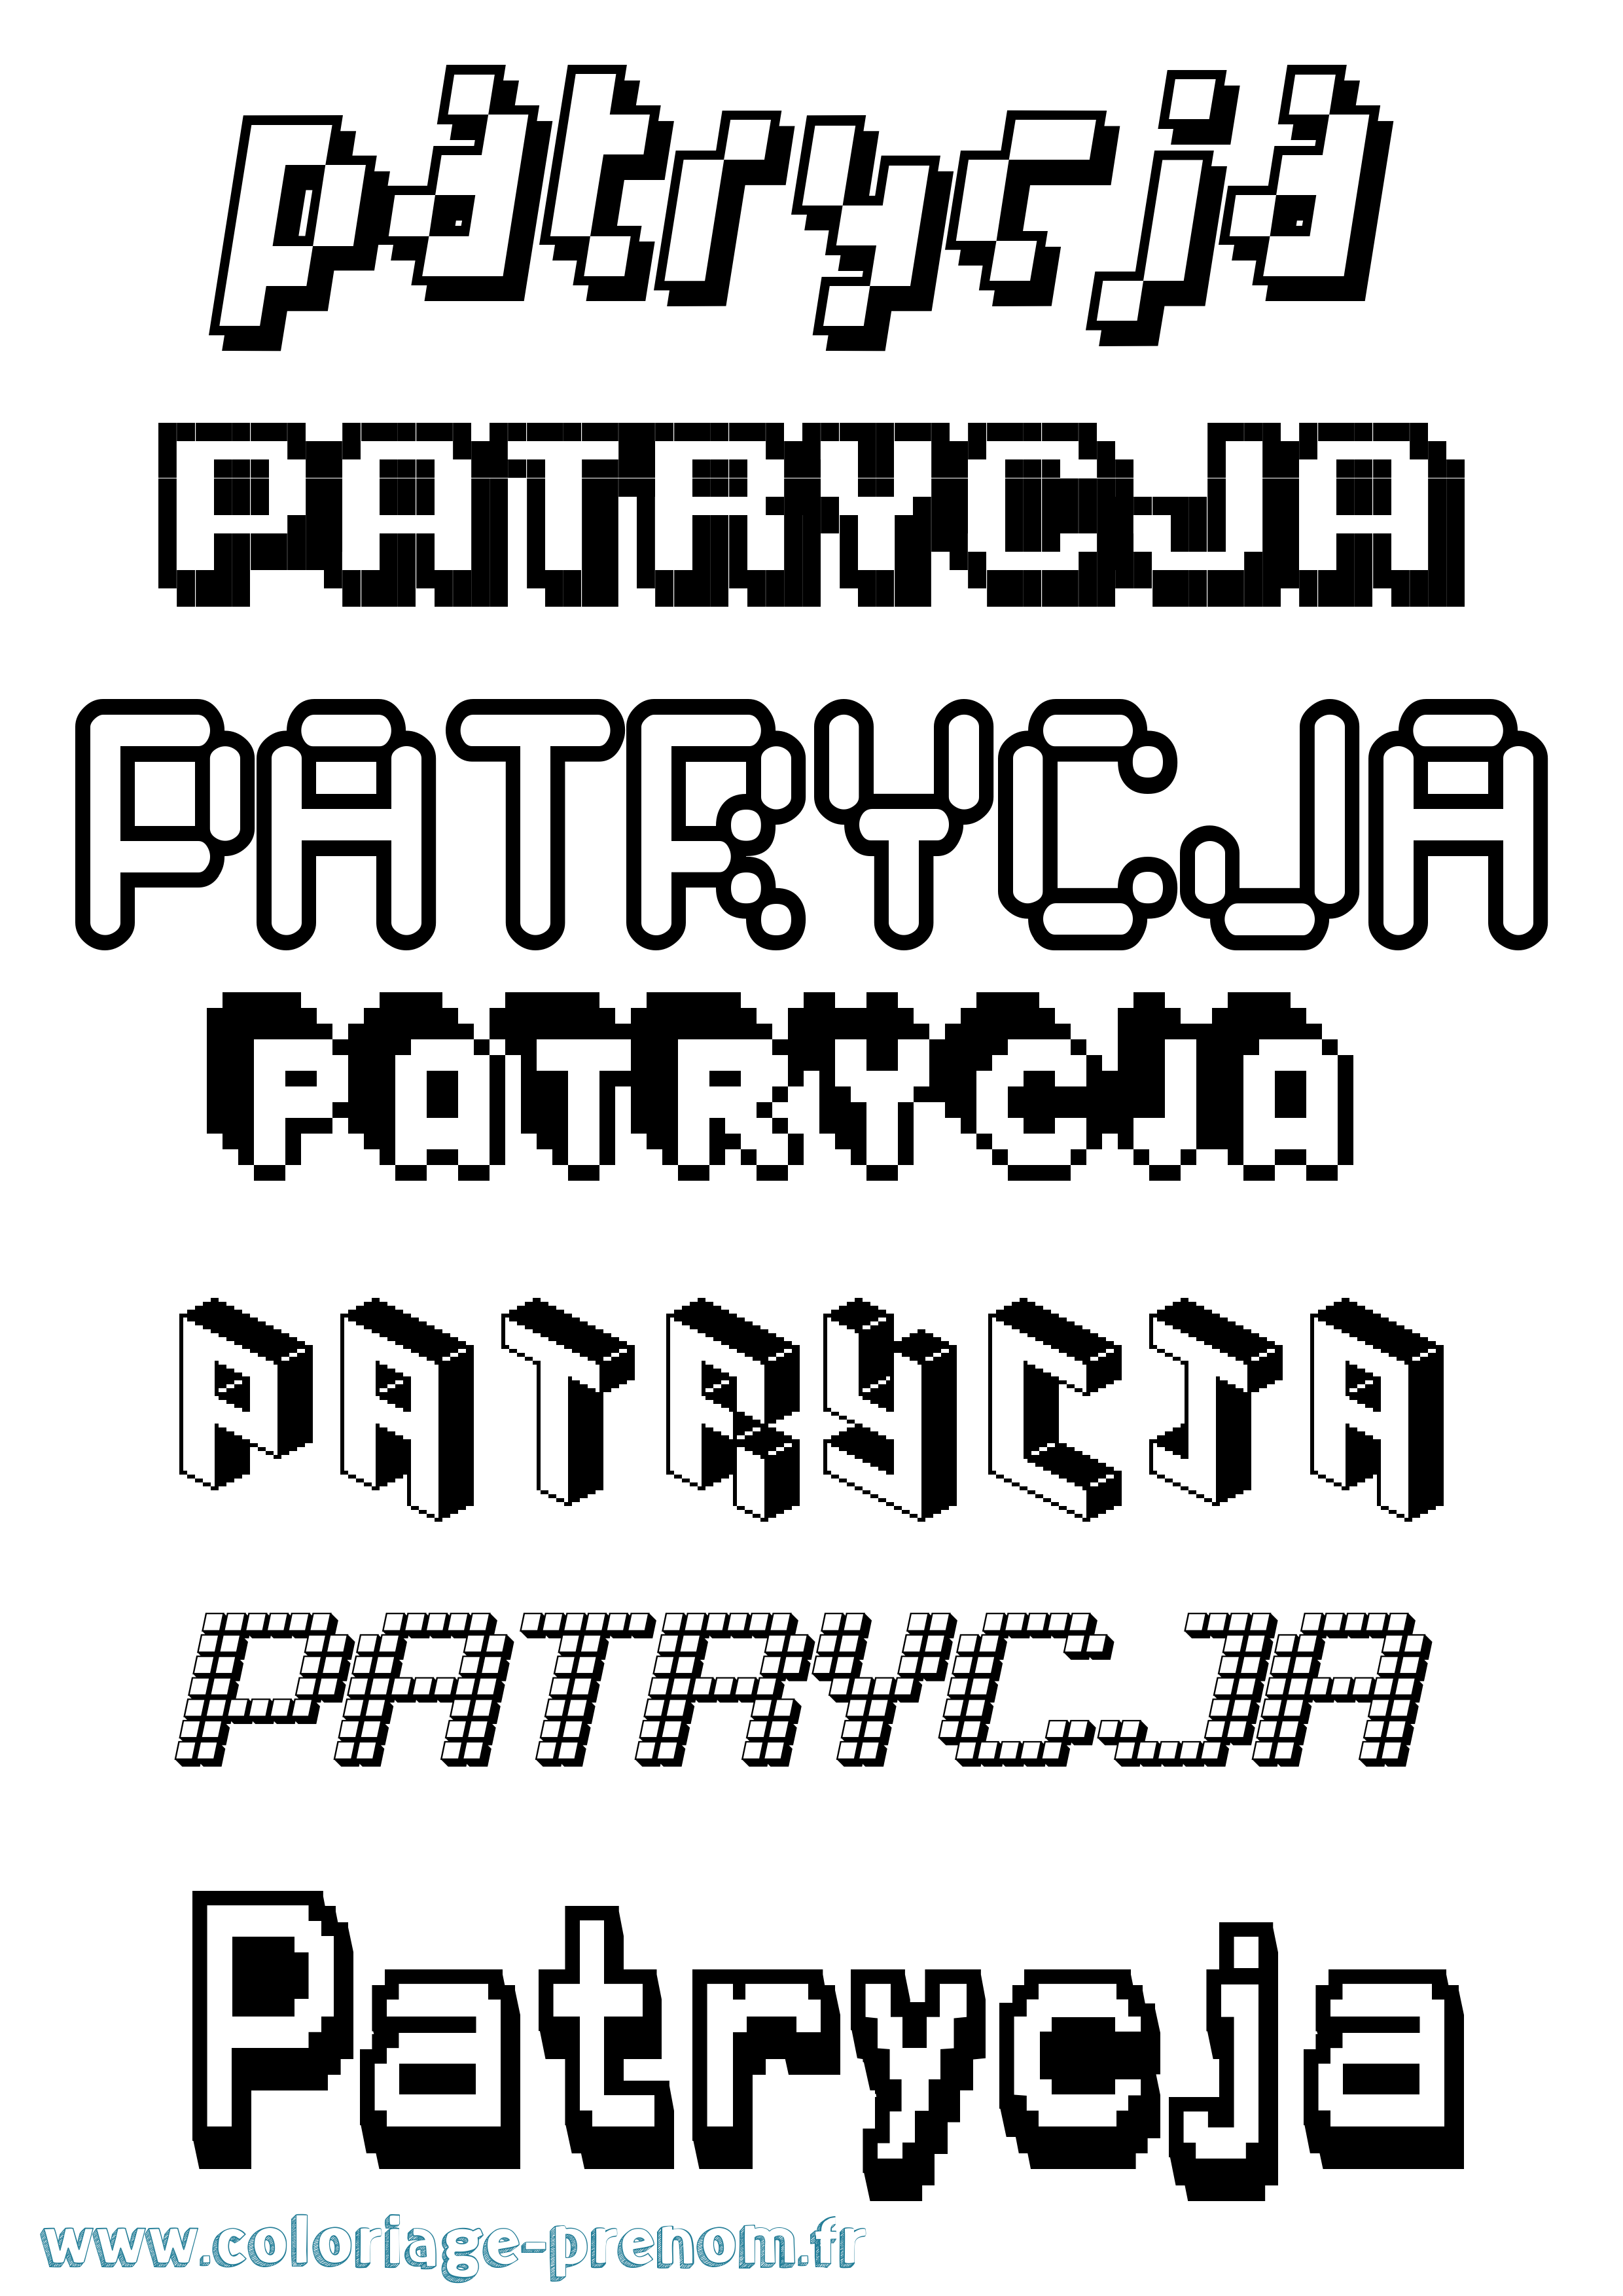 Coloriage prénom Patrycja Pixel